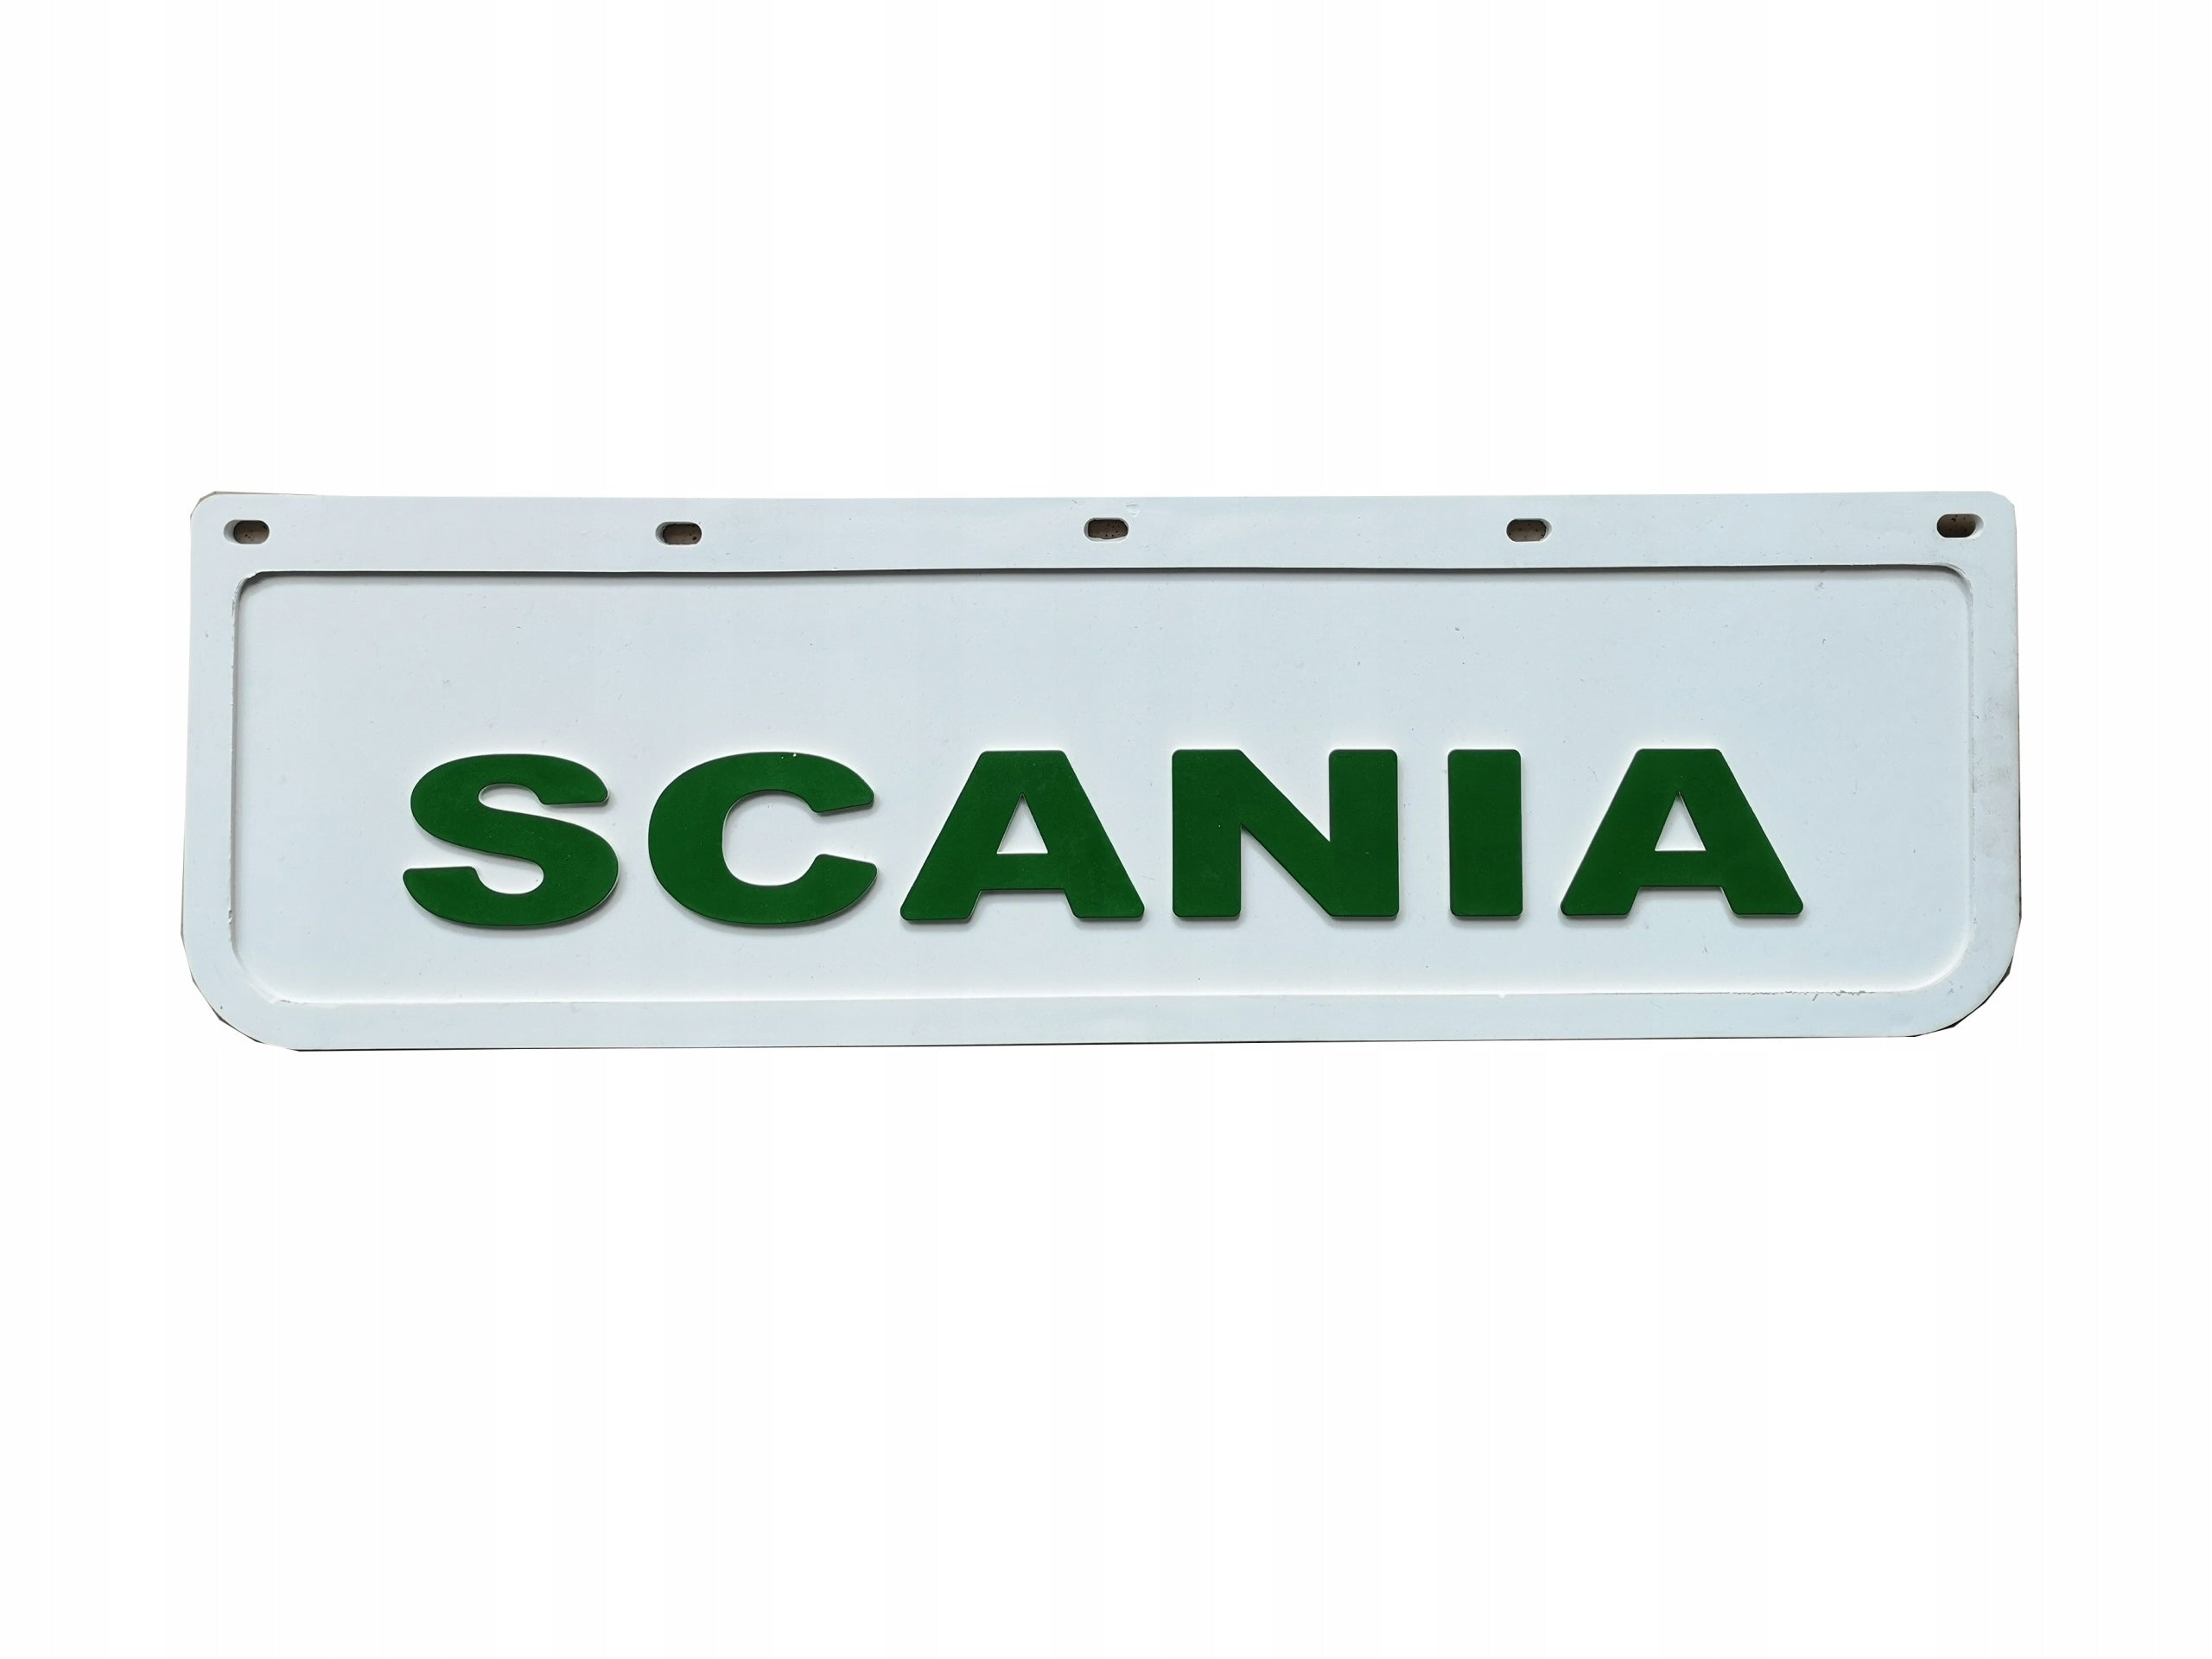 Skvettlapp Scania, 60x18cm - Hvit